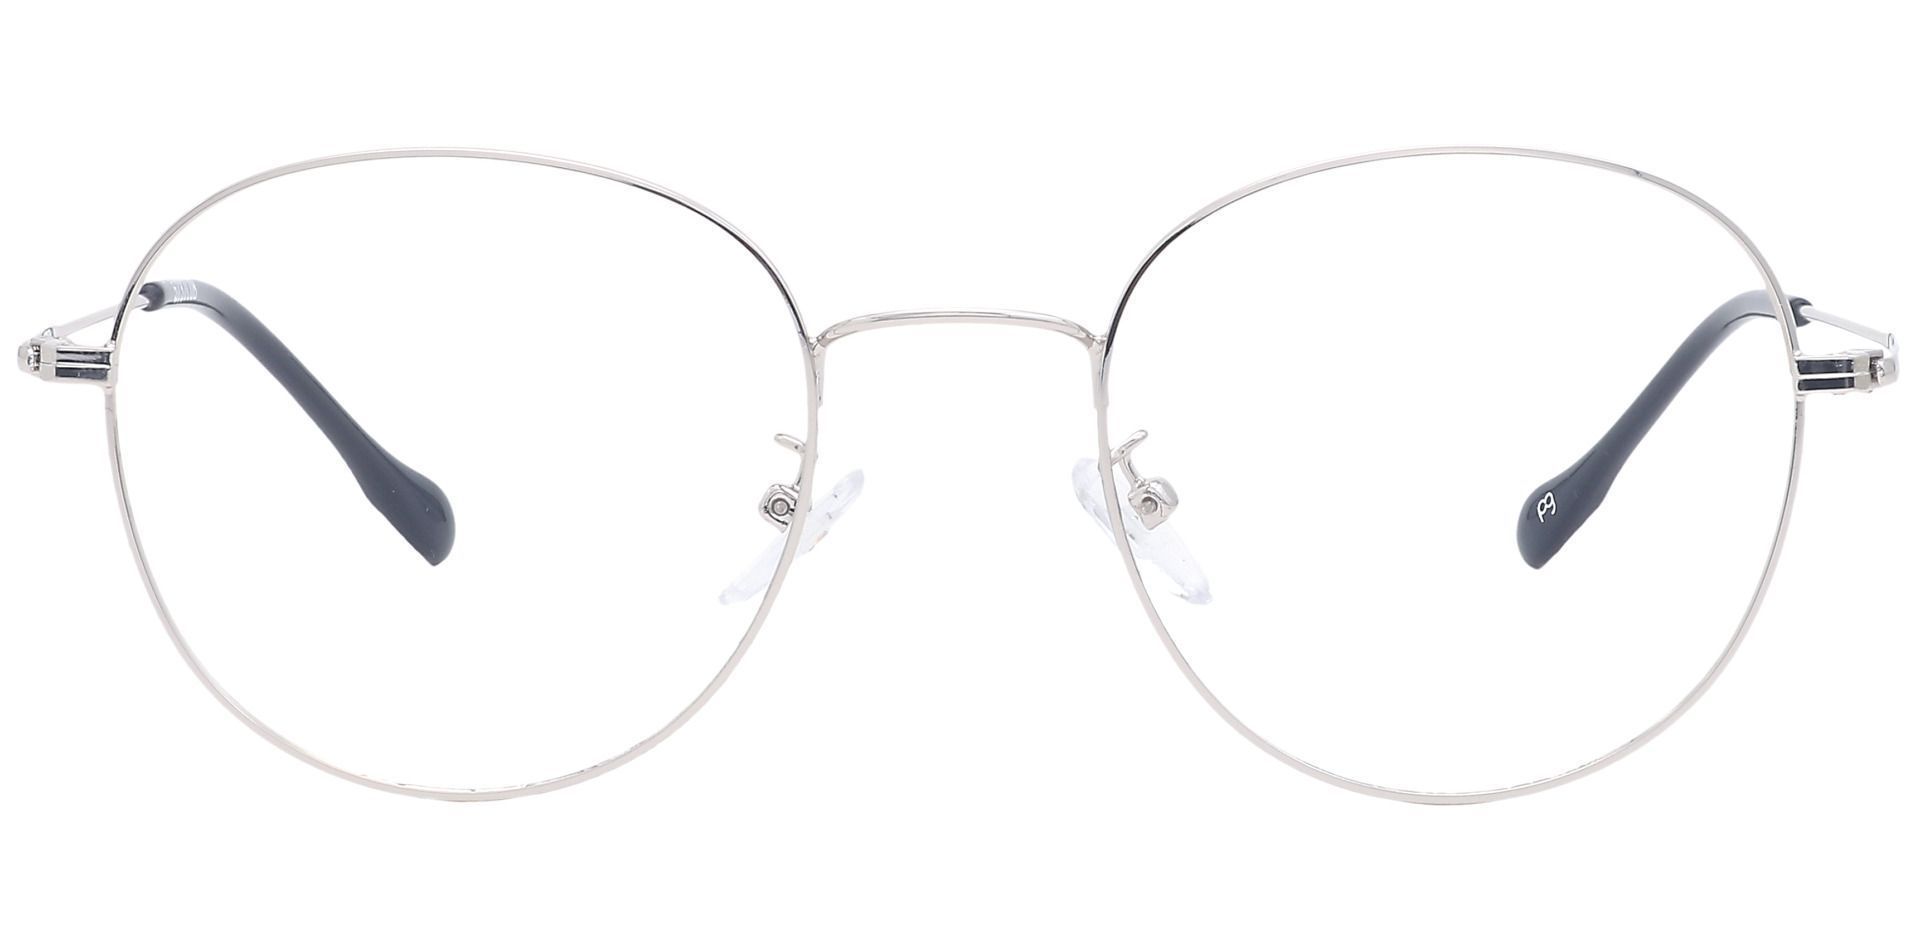 Miller Oval Eyeglasses Frame - Gray